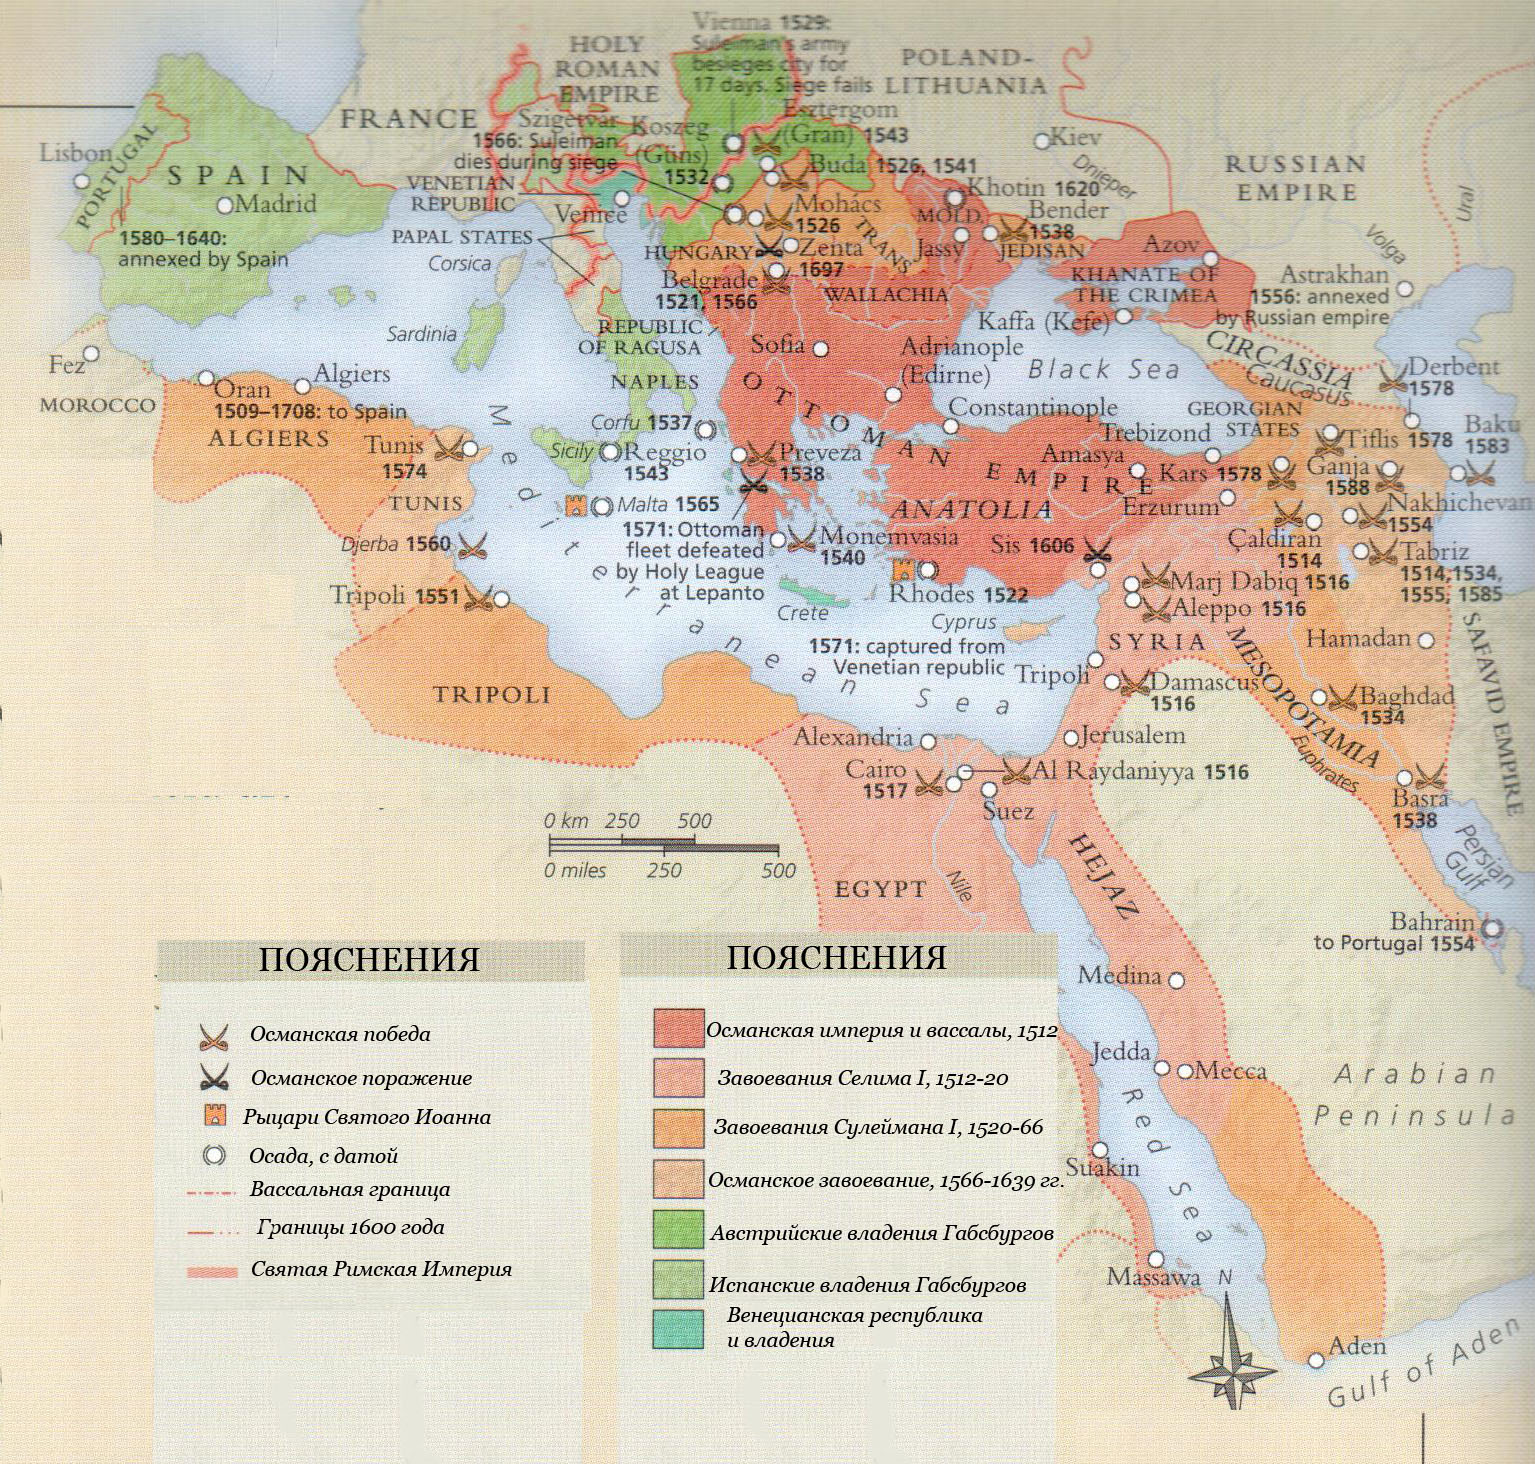 Показать карту османской империи. Османская Империя 16 век карта. Границы Османской империи 1520-1566 карта. Карта Османской империи 17-18 века.